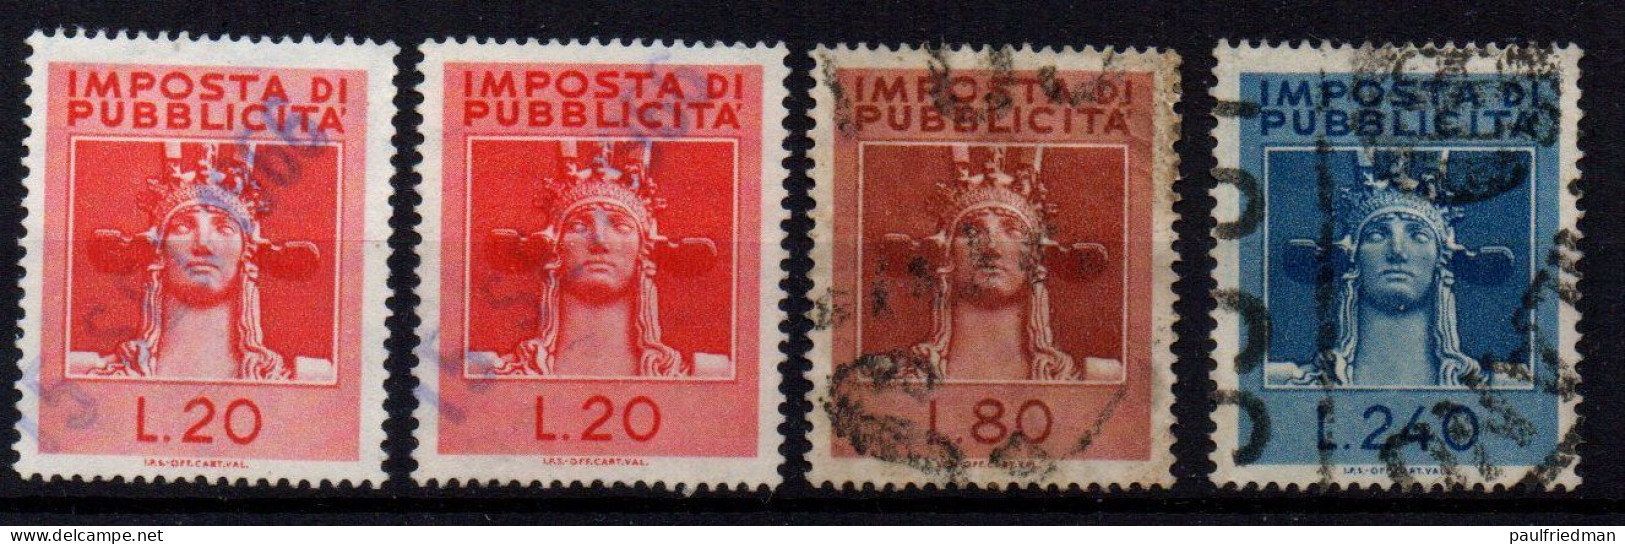 Repubblica 1964 - Marca Imposta Di Pubblicità - Piccolo Lotto - Usati - Revenue Stamps